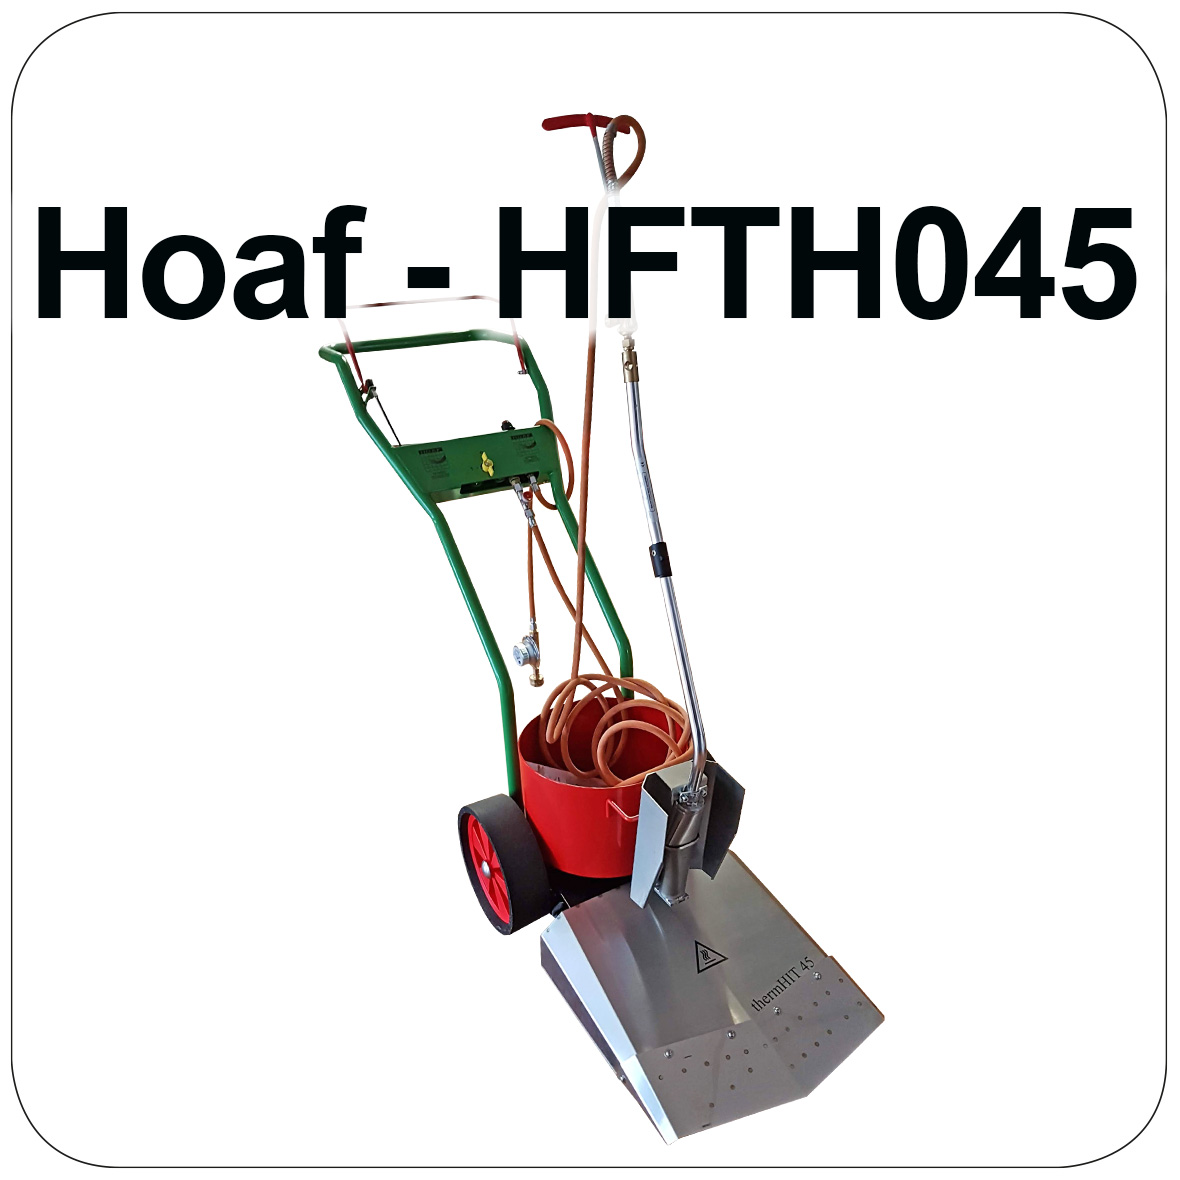 HOAF Weed Burner - HFTH045